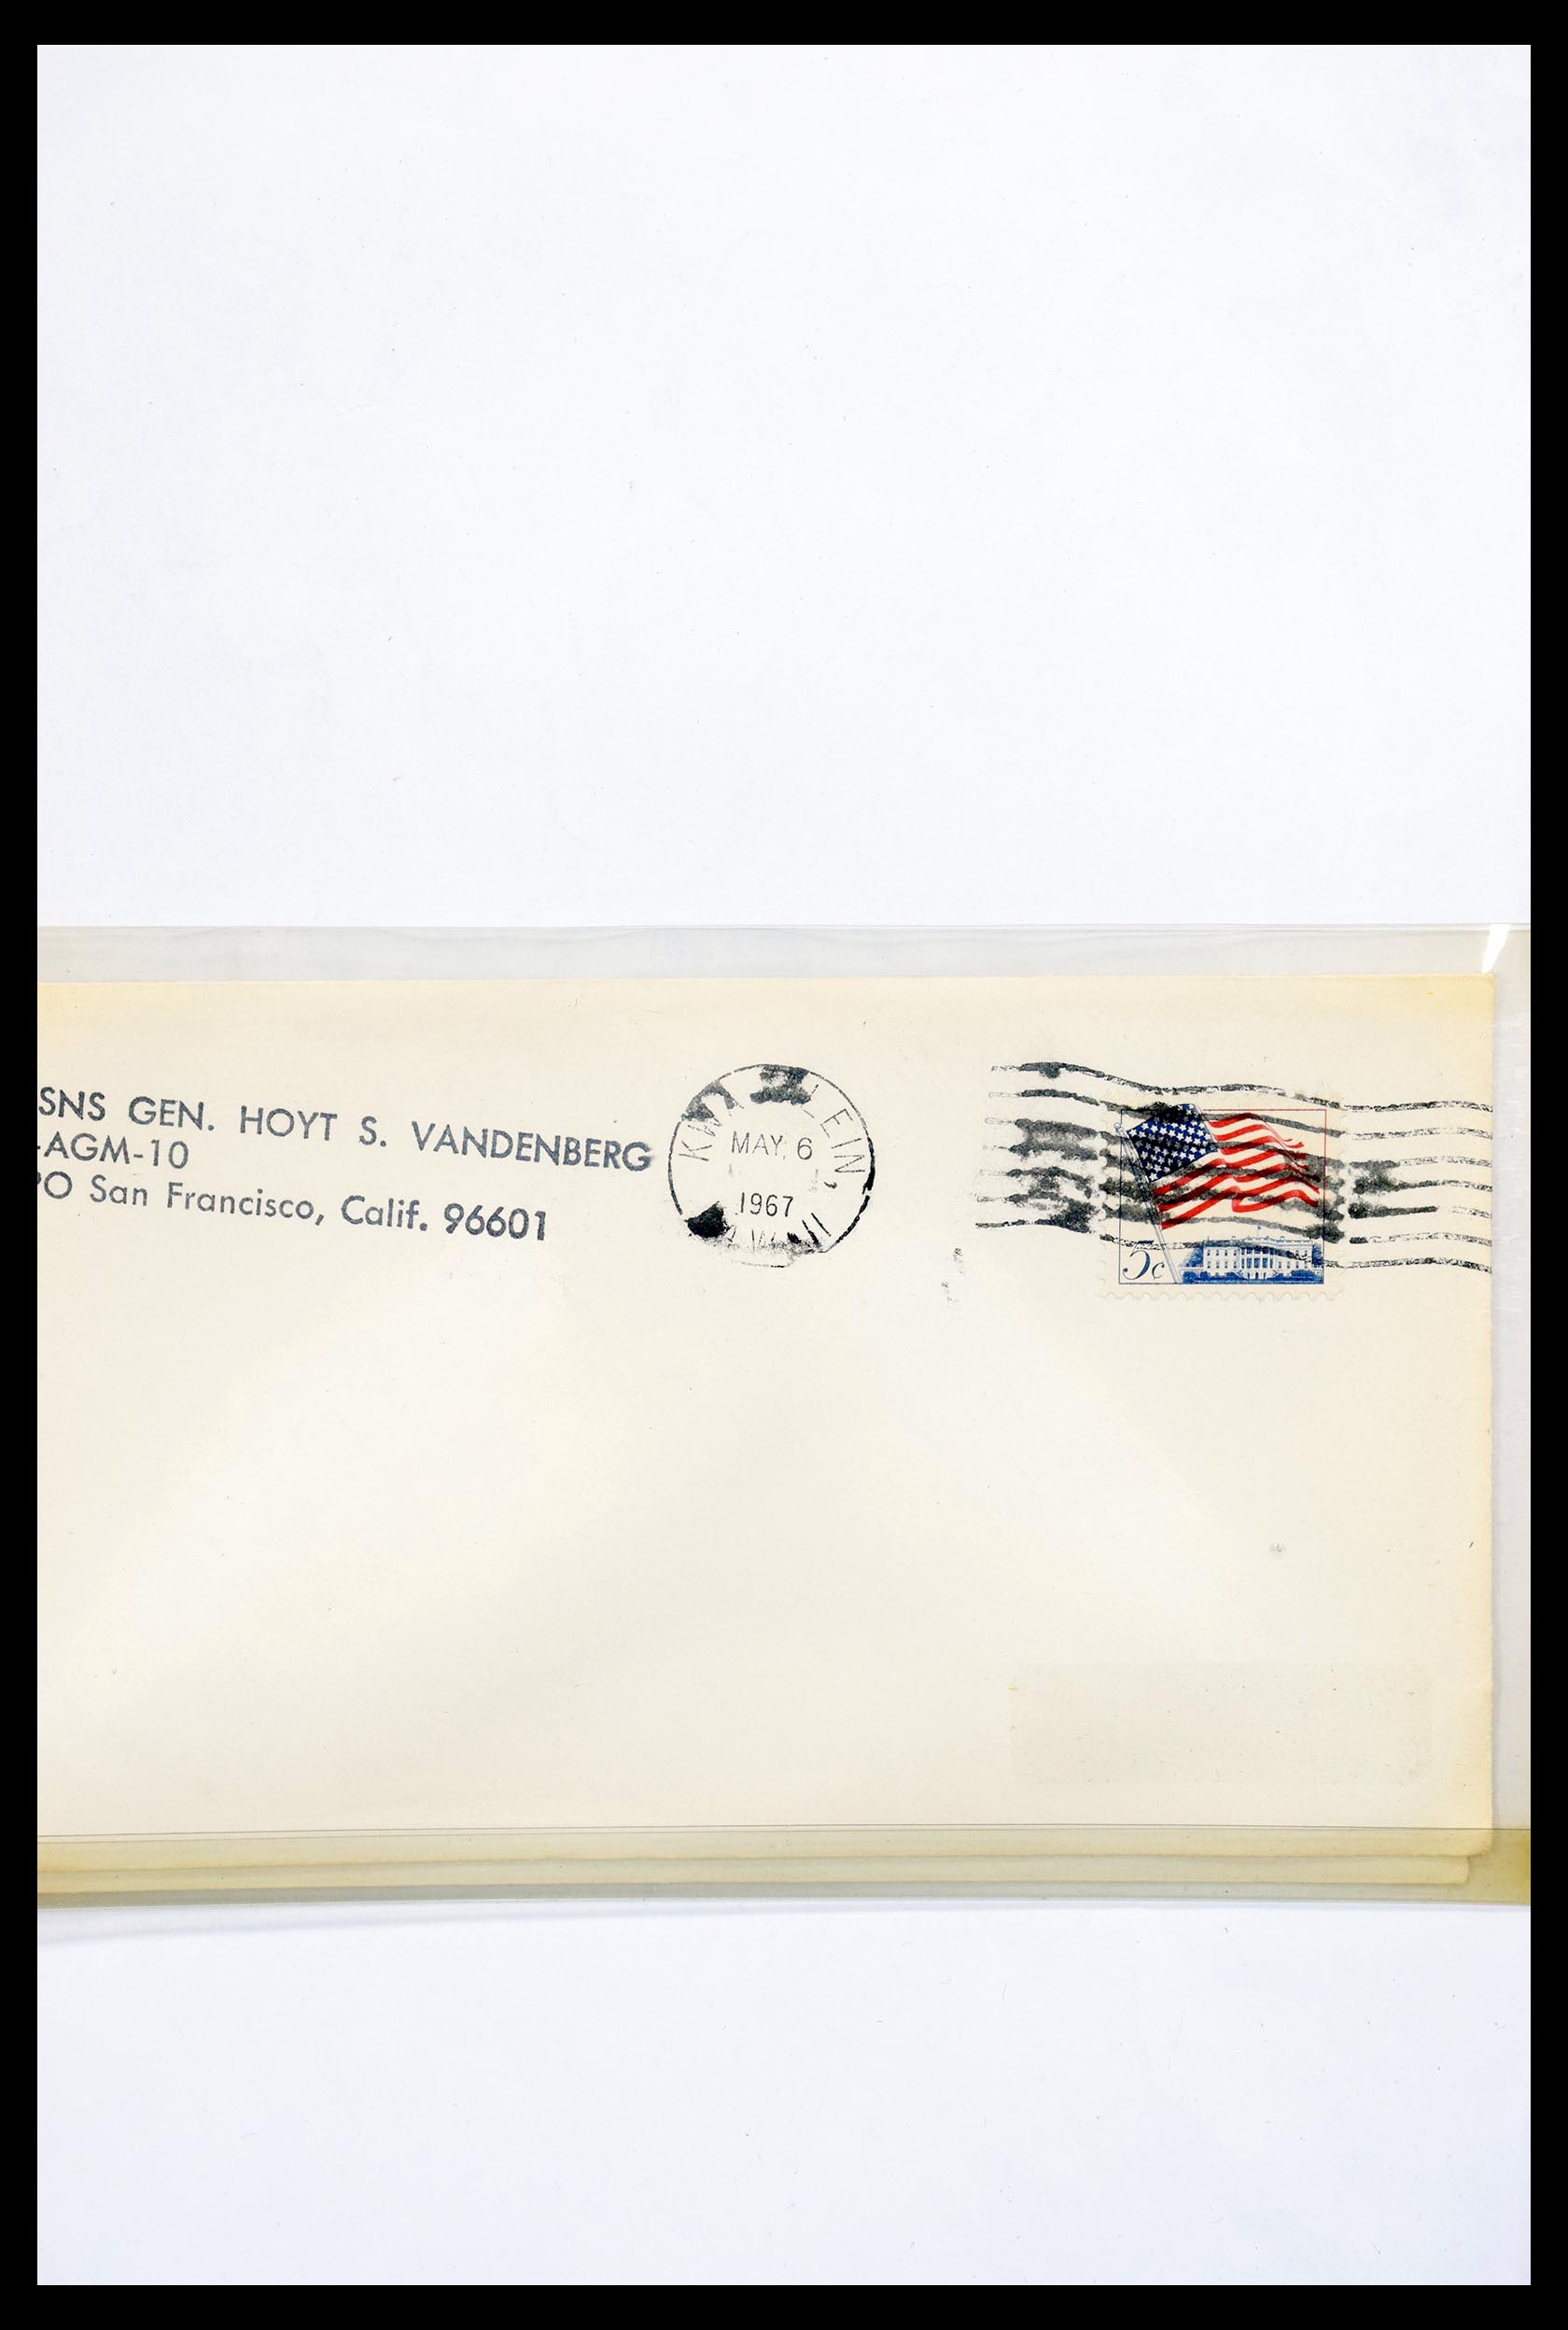 30341 319 - 30341 USA scheepspost brieven 1930-1970.